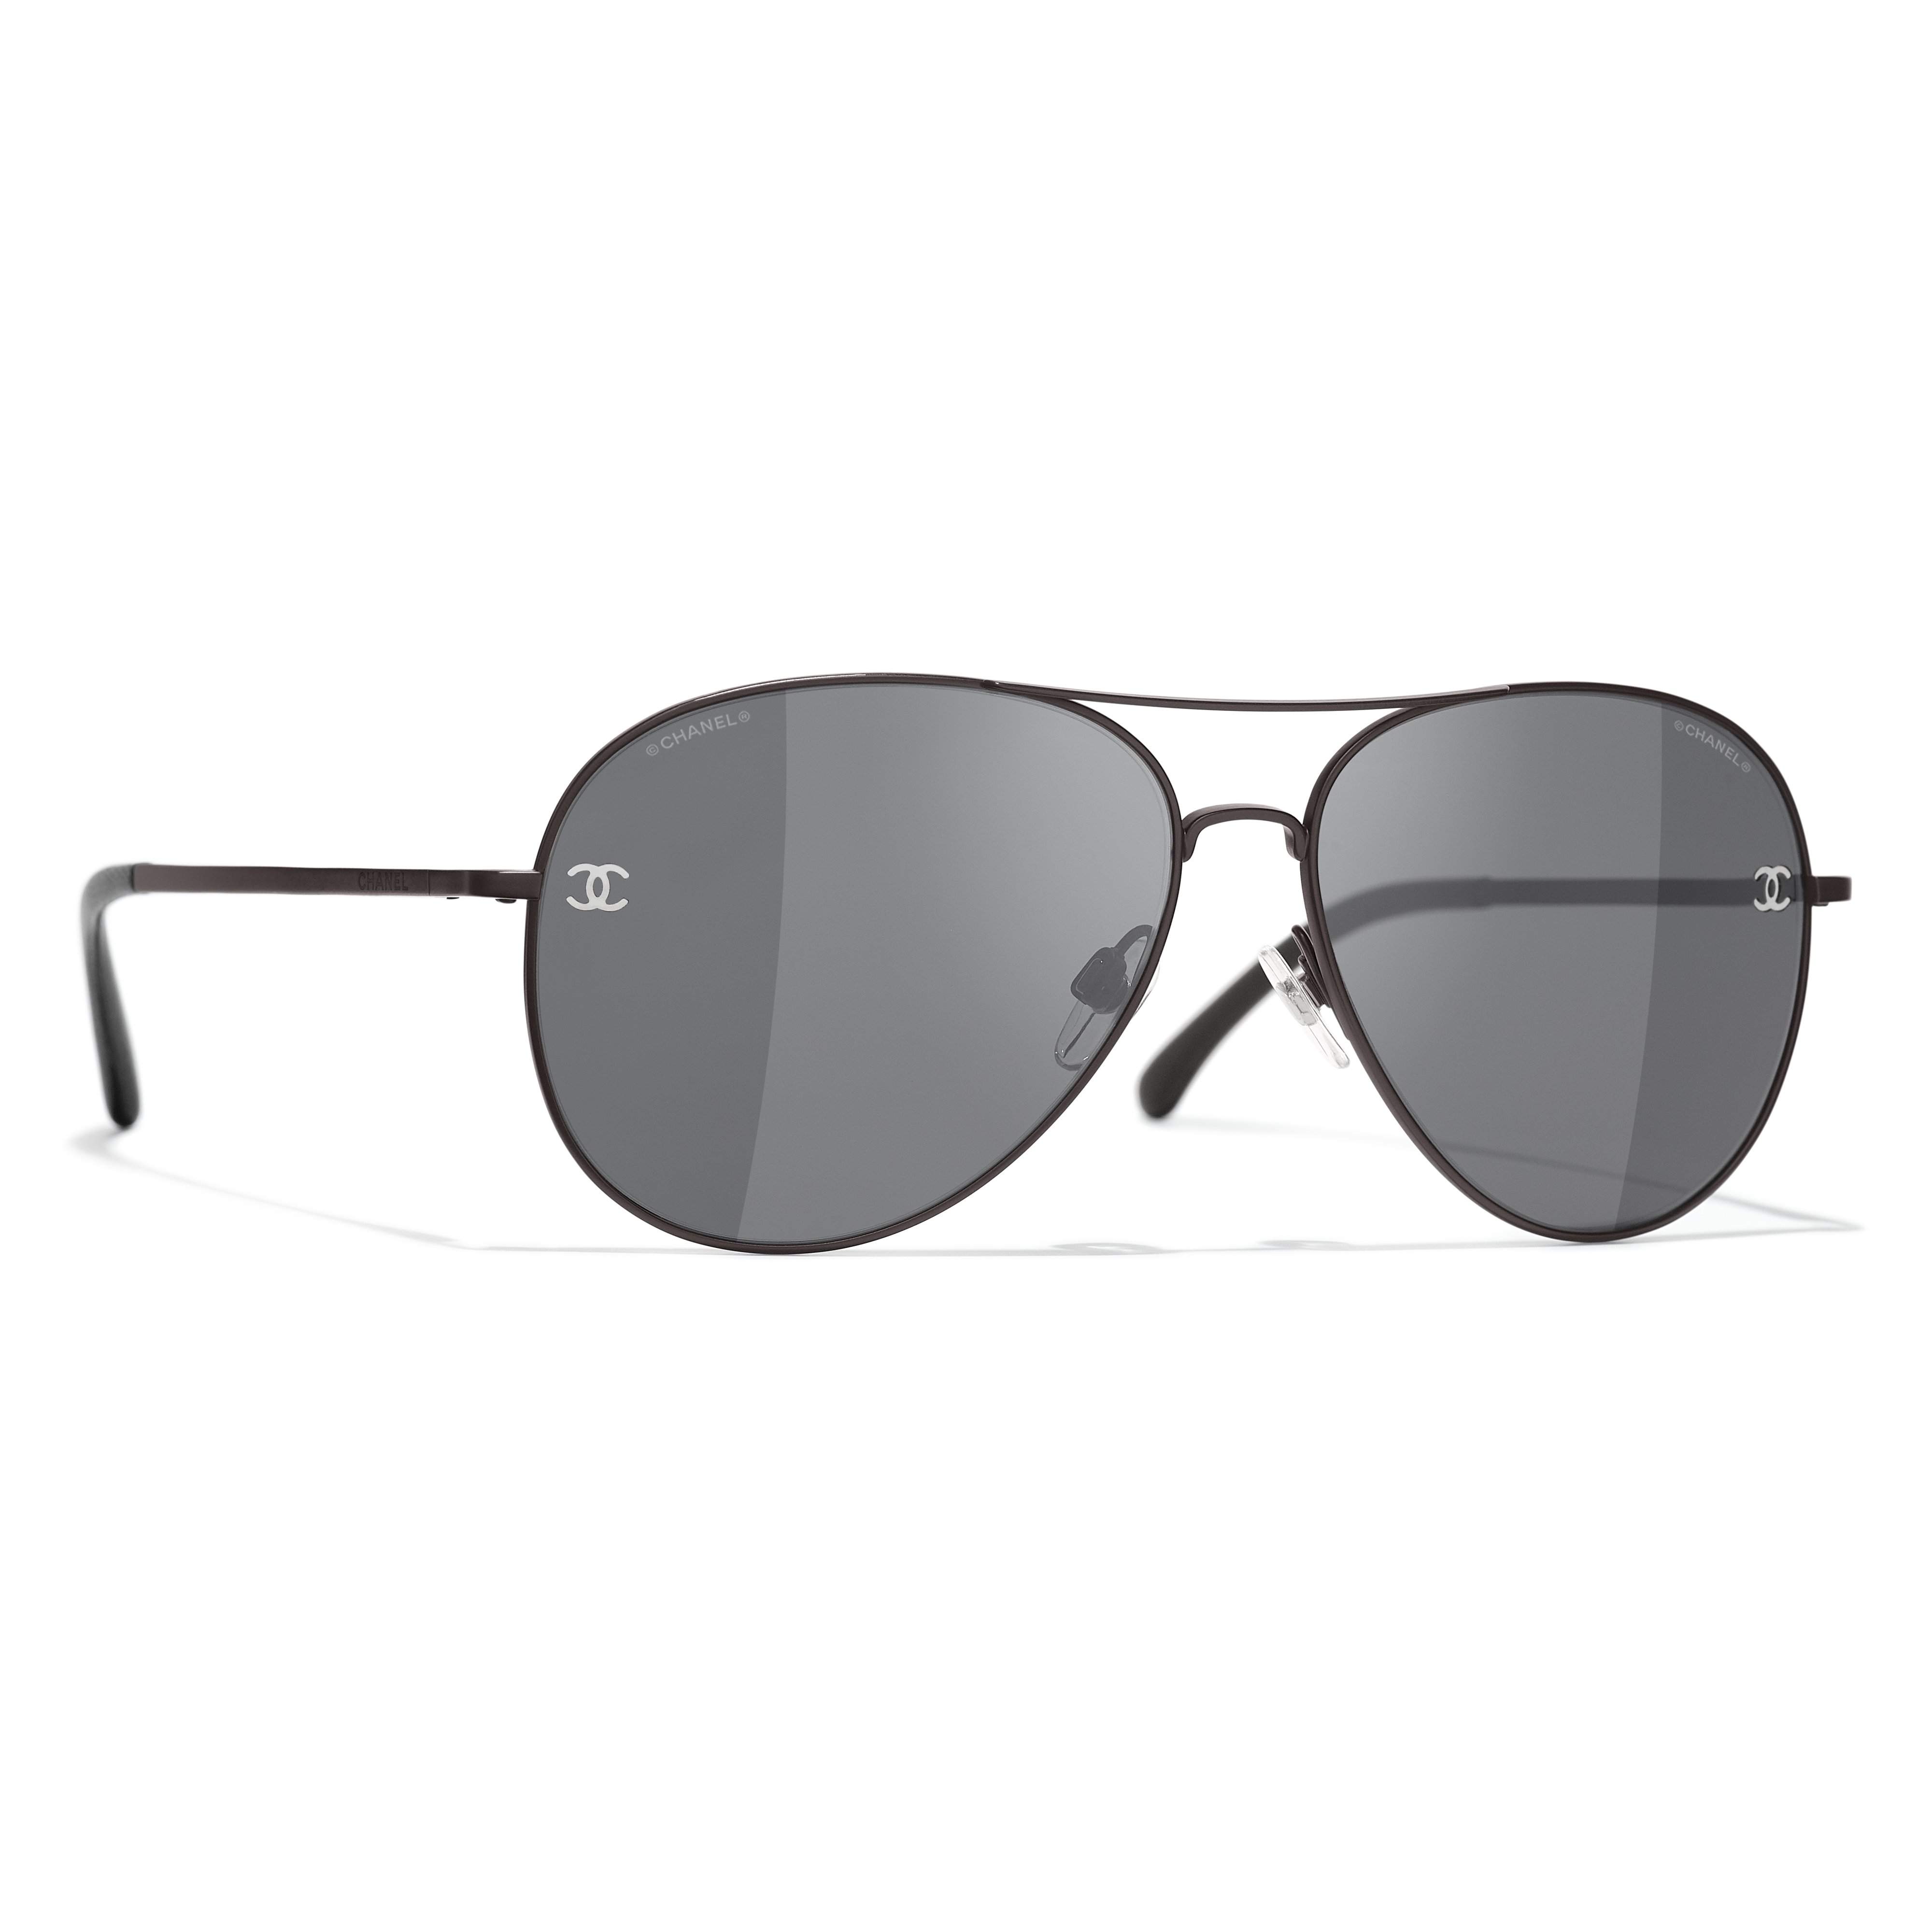 Sunglasses Chanel Black in Plastic - 32180890